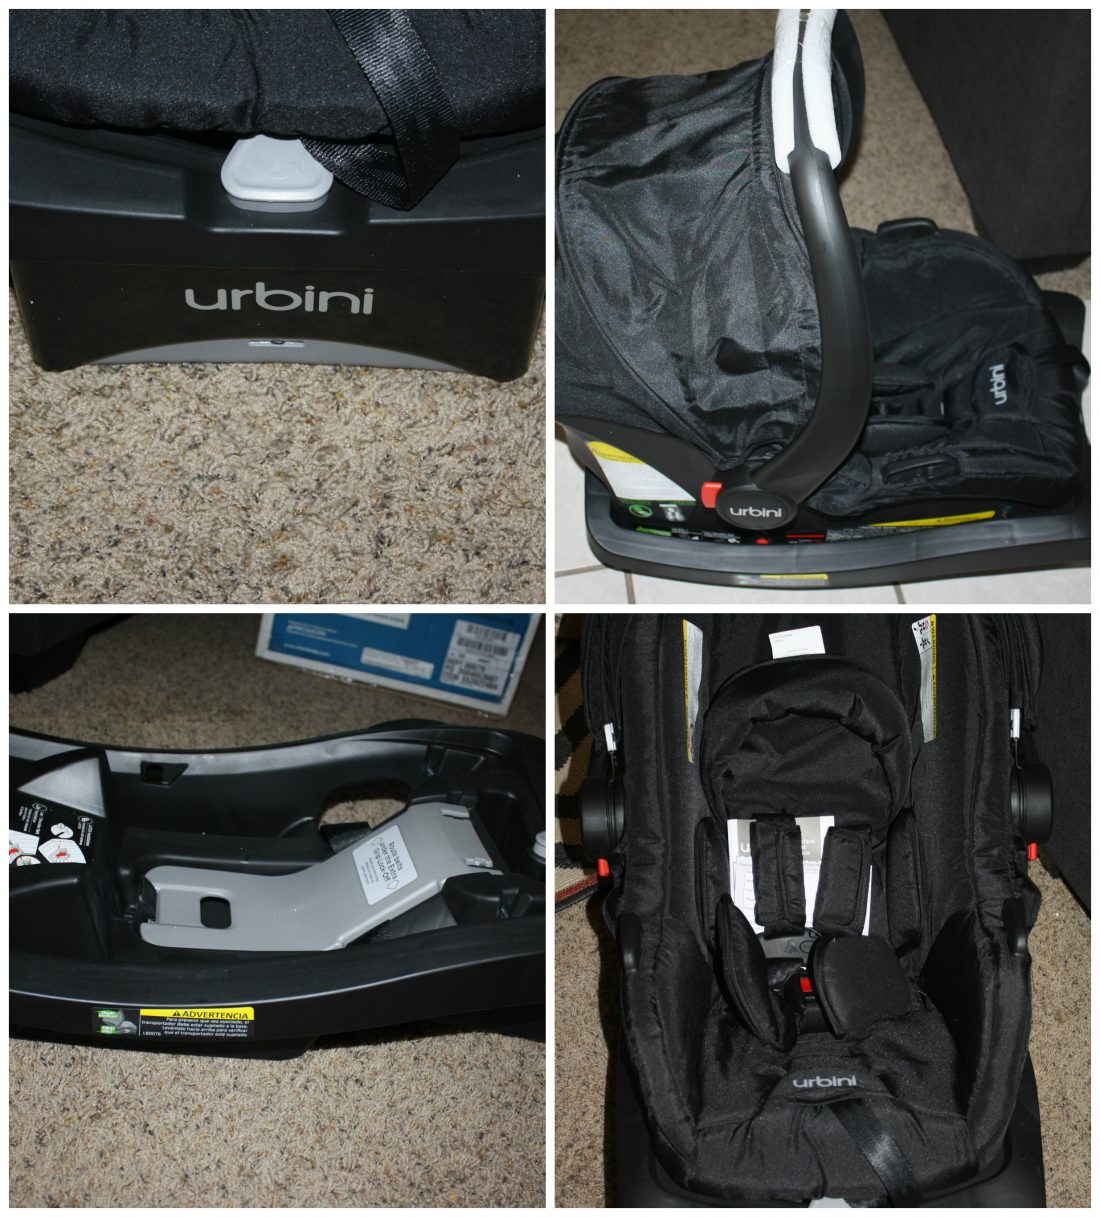 urbini car seat and stroller reviews